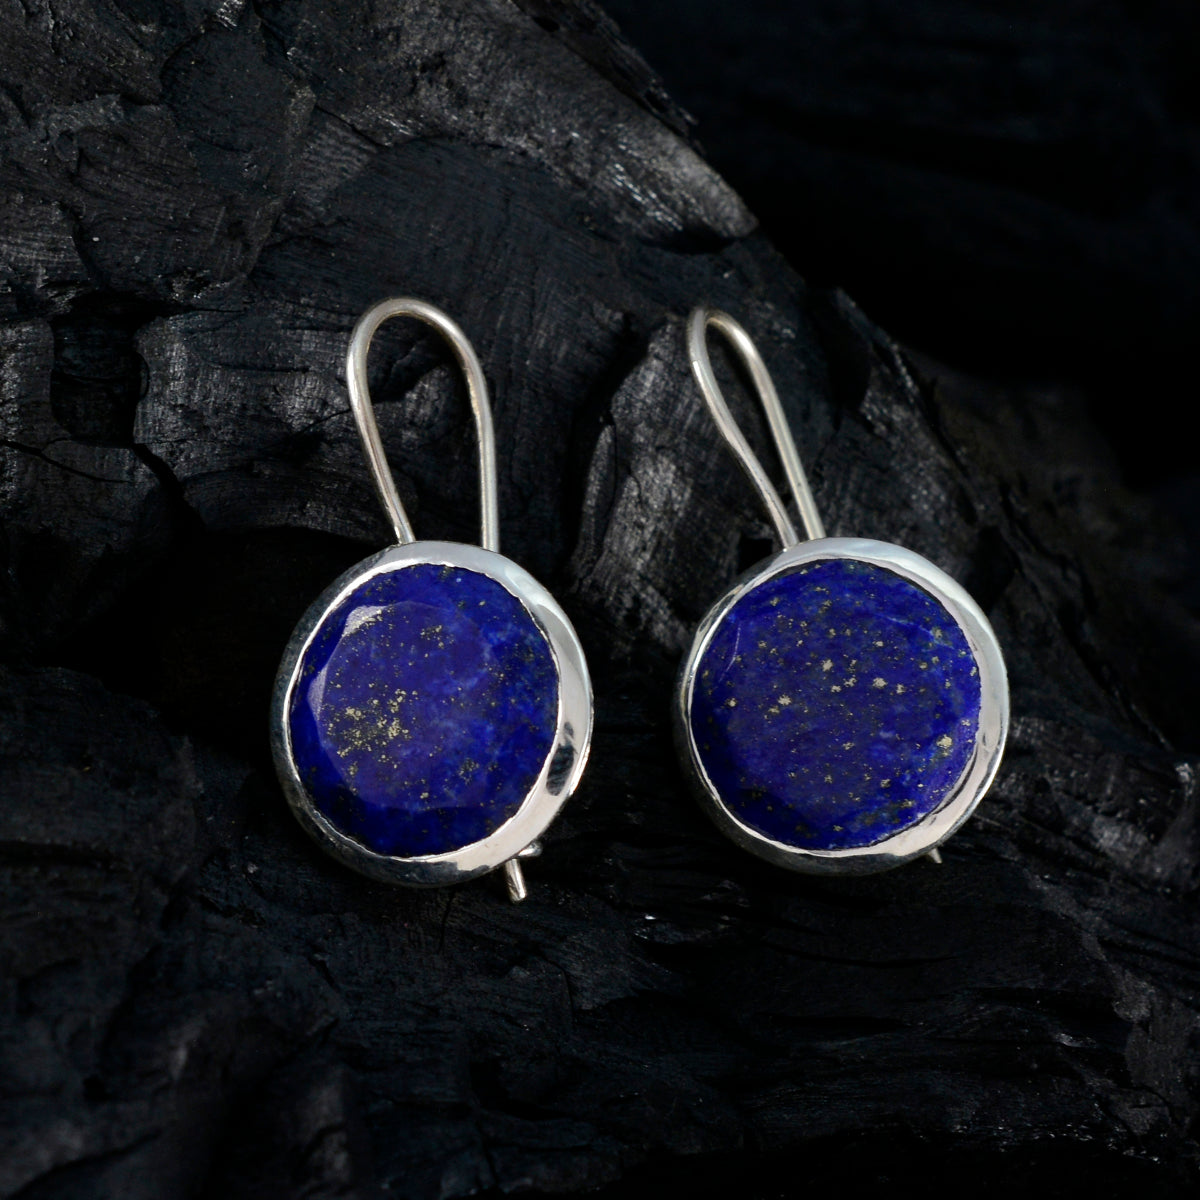 Riyo envoûtant 925 boucle d'oreille en argent sterling pour femme lapis lazuli boucle d'oreille réglage de la lunette boucle d'oreille bleue boucle d'oreille pendante